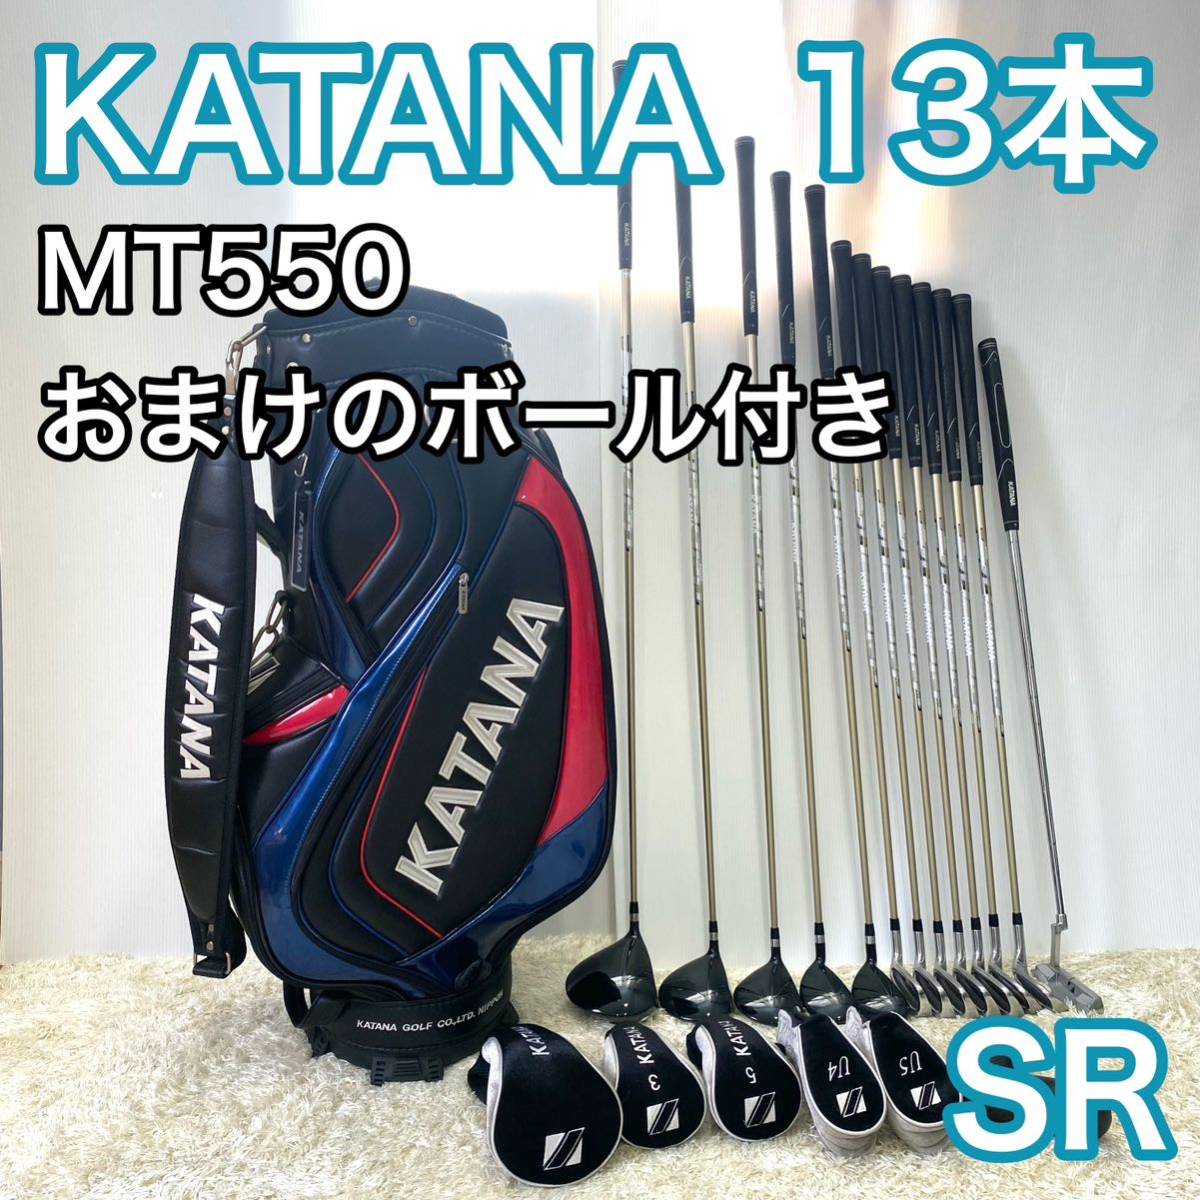 カタナ MT550 ゴルフセット キャディバッグ 右利き 13本 SR おまけ付-